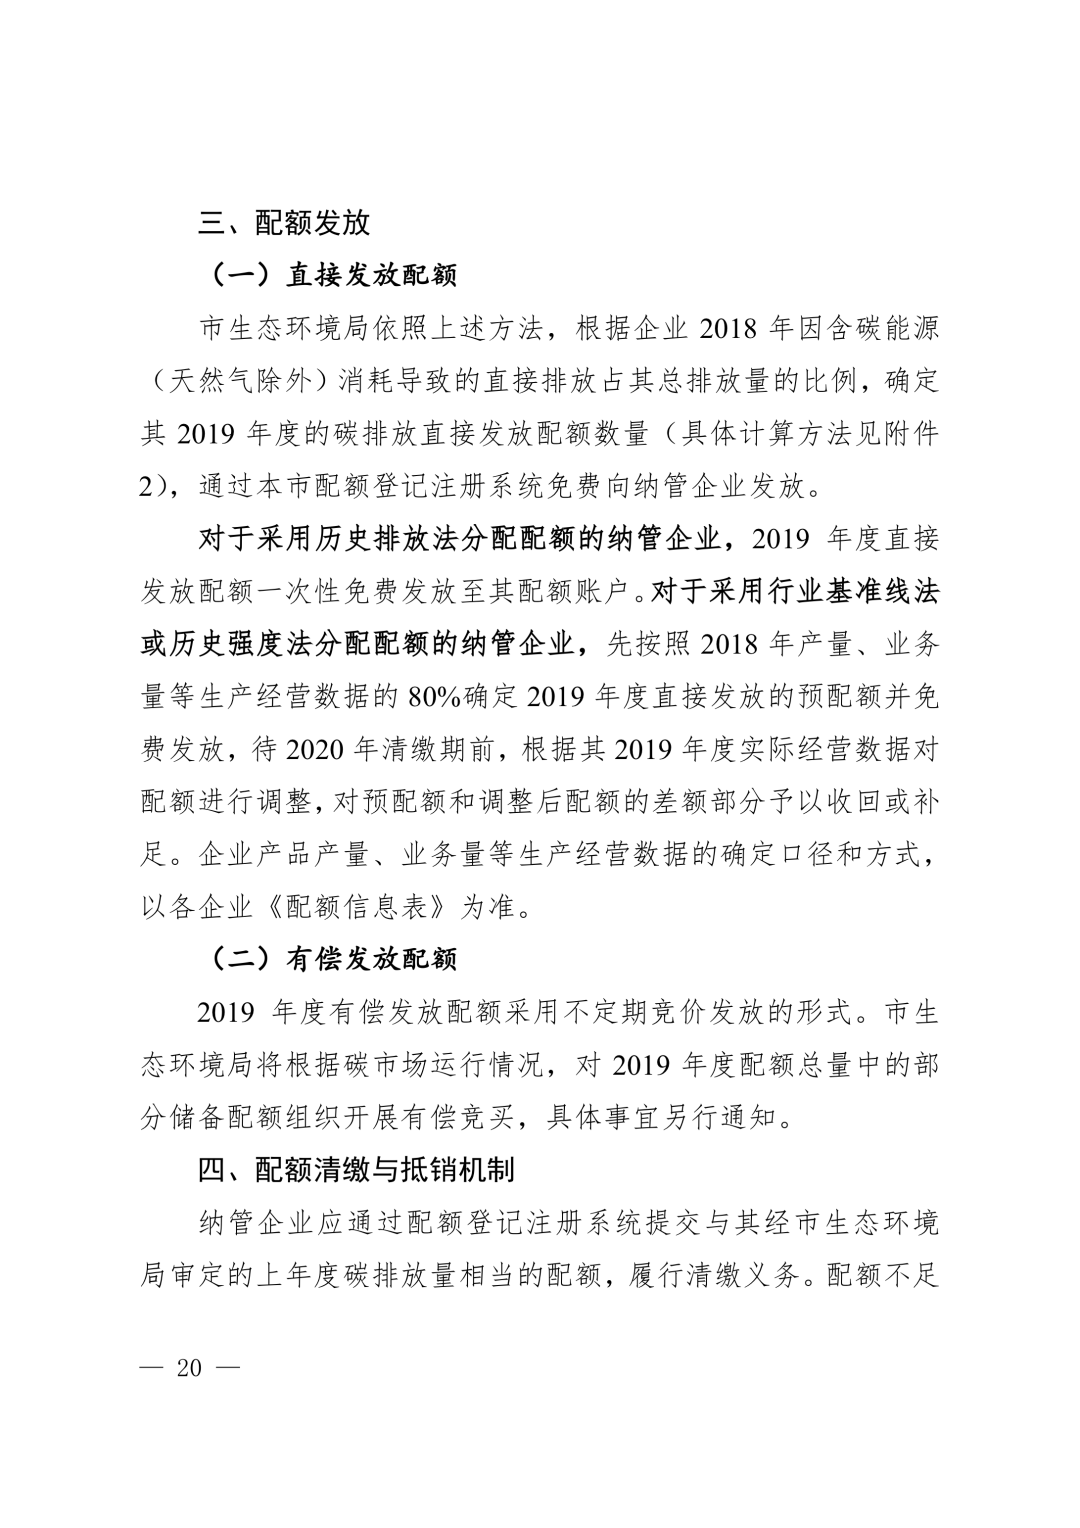 【关注】上海市生态环境局关于印发《上海市纳入碳排放配额管理单位名单（2019版）》及《上海市2019年碳排放配额分配方案》的通知(图20)